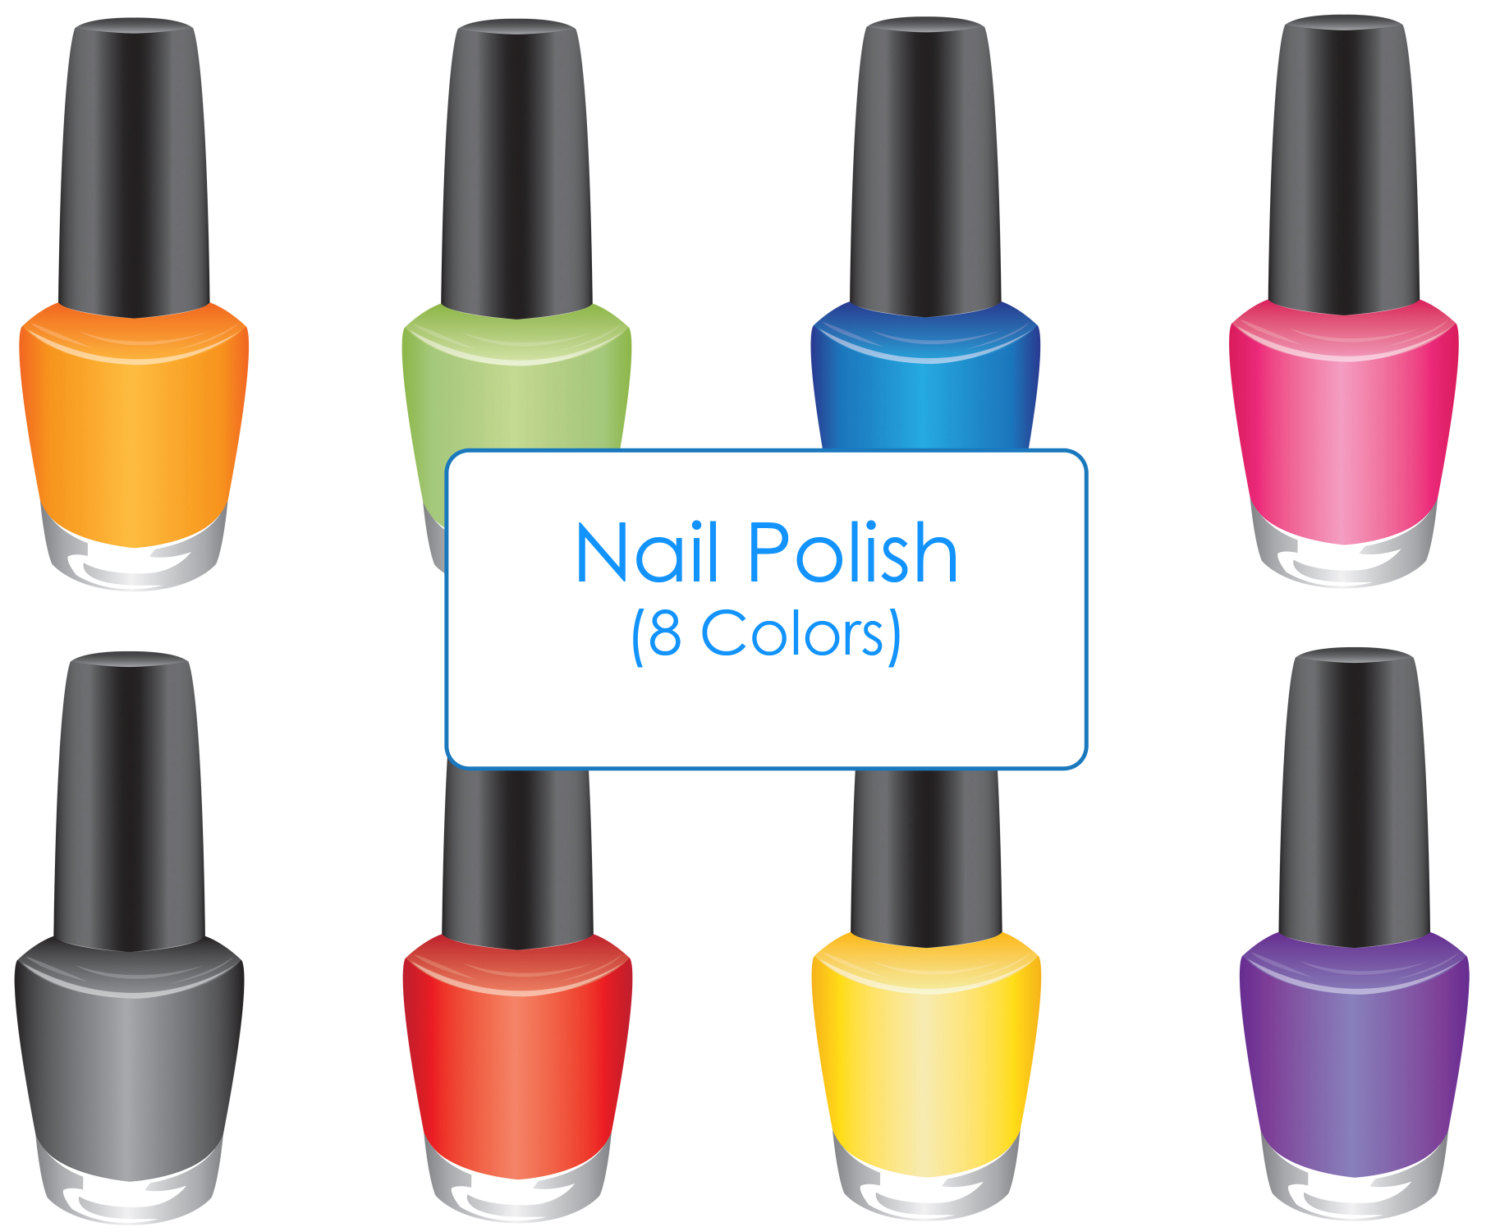 3. Free Clip Art of Nail Polish - wide 4